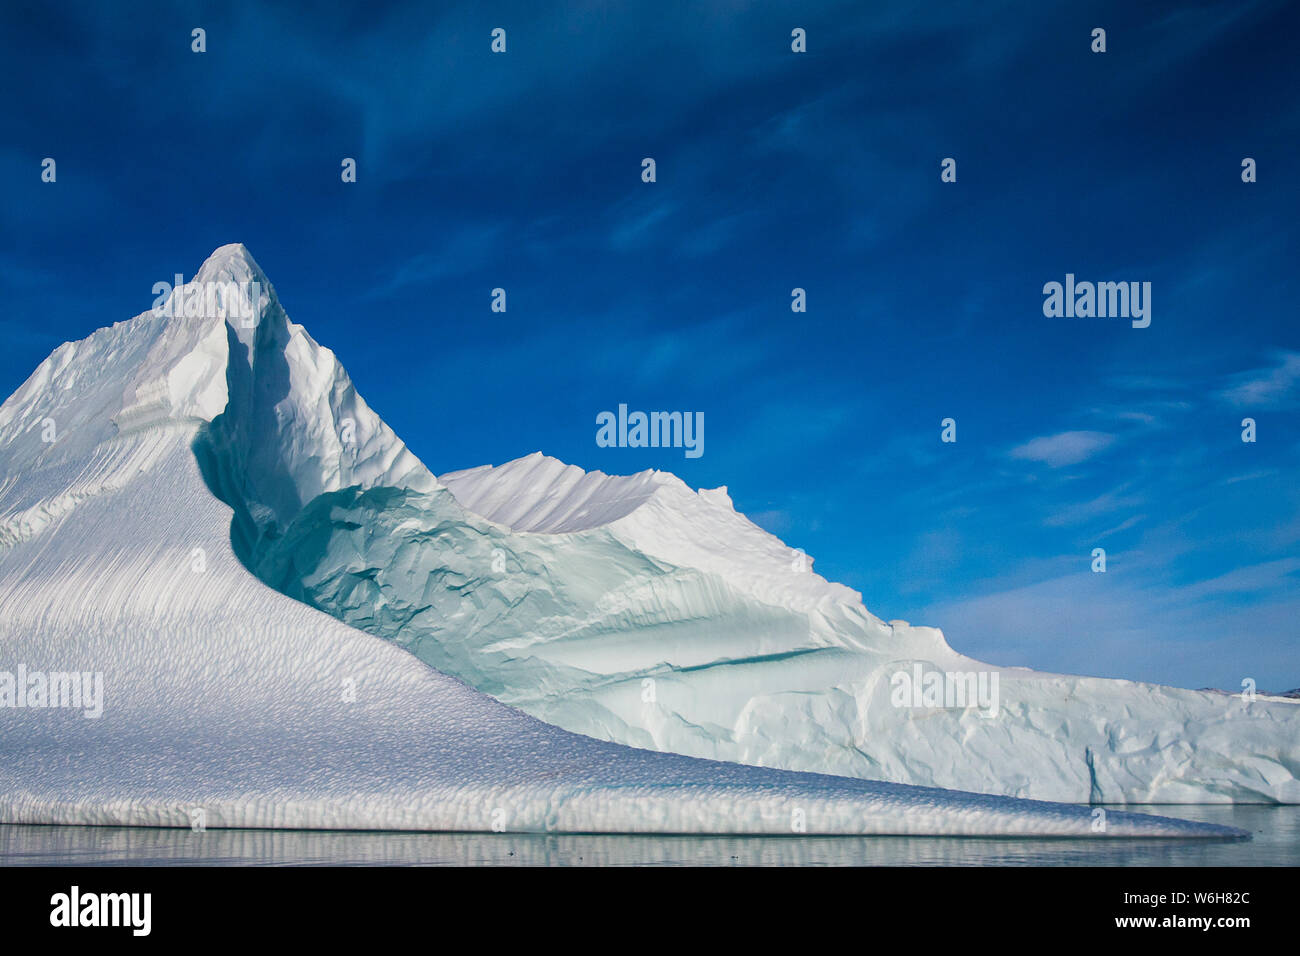 Accesa come metallica di gelato, una grande scolpita iceberg si siede sotto un ampio cielo blu in Scoresbysund, est della Groenlandia. Foto Stock